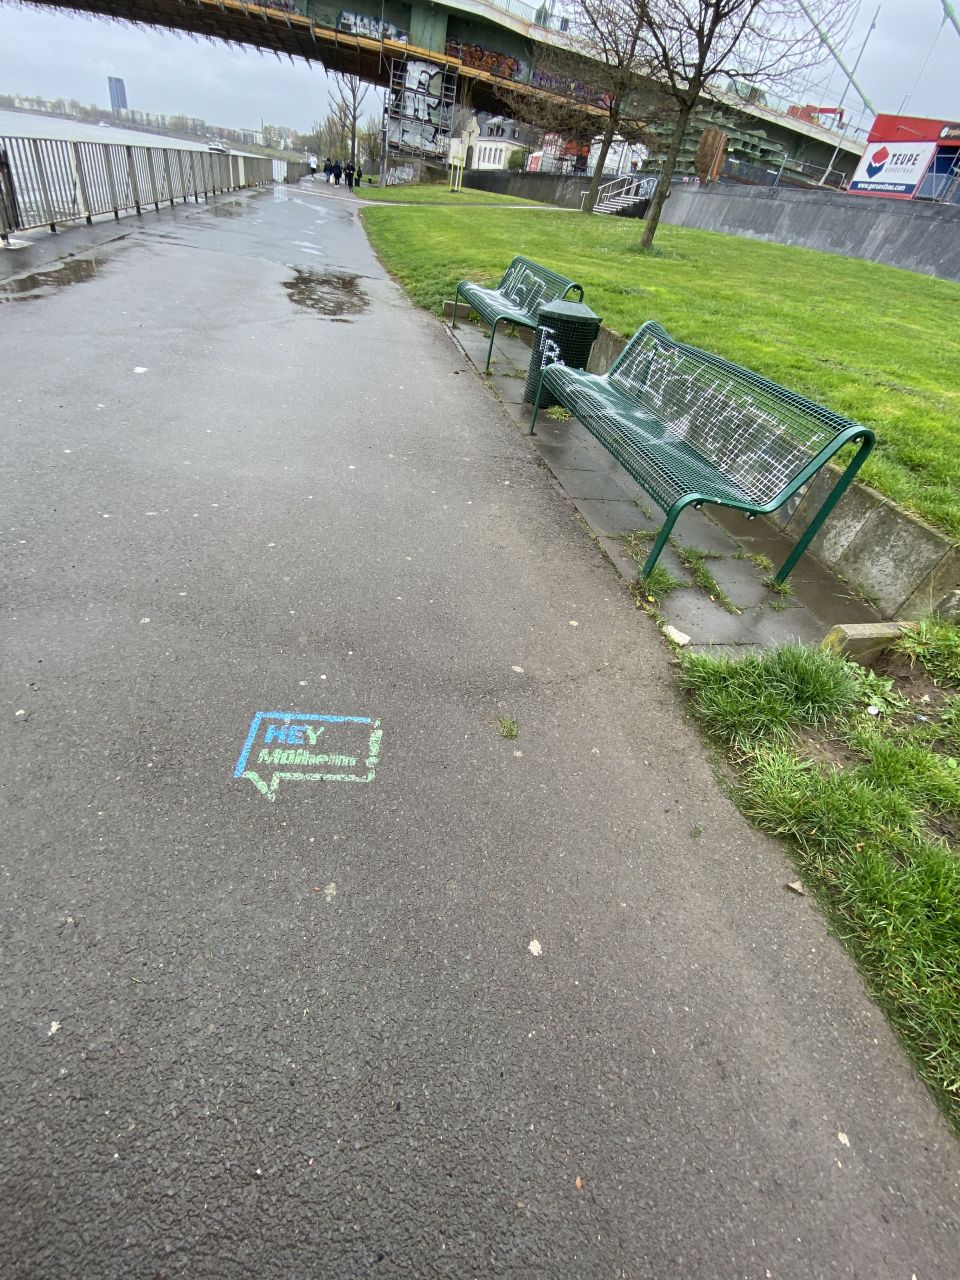 Fußweg am Rhein. Rechts stehen zwei grüne Bänke, die mit Graffitis besprüht sind. Auf dem Gehweg ist in blauer und grüner Farbe das Logo "Hey Mülheim" gesprüht. 